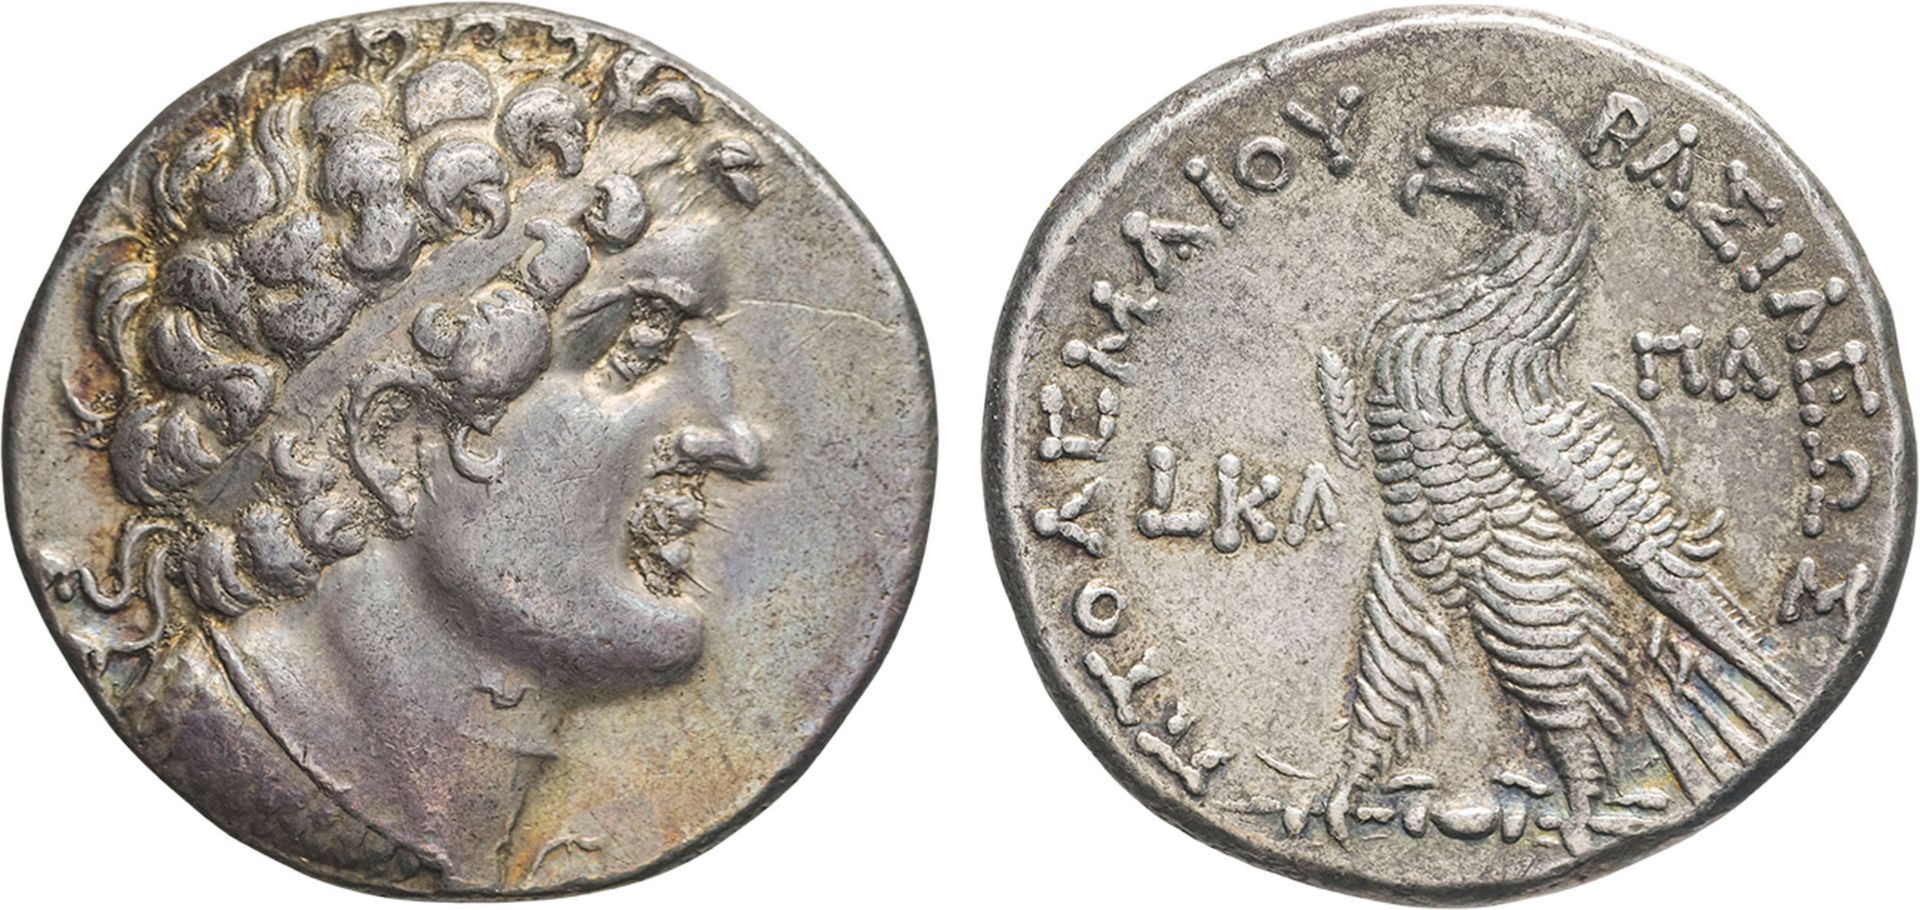 MONETE GRECHE. TOLOMEO VI (180-145 A.C.). TETRADRACMA